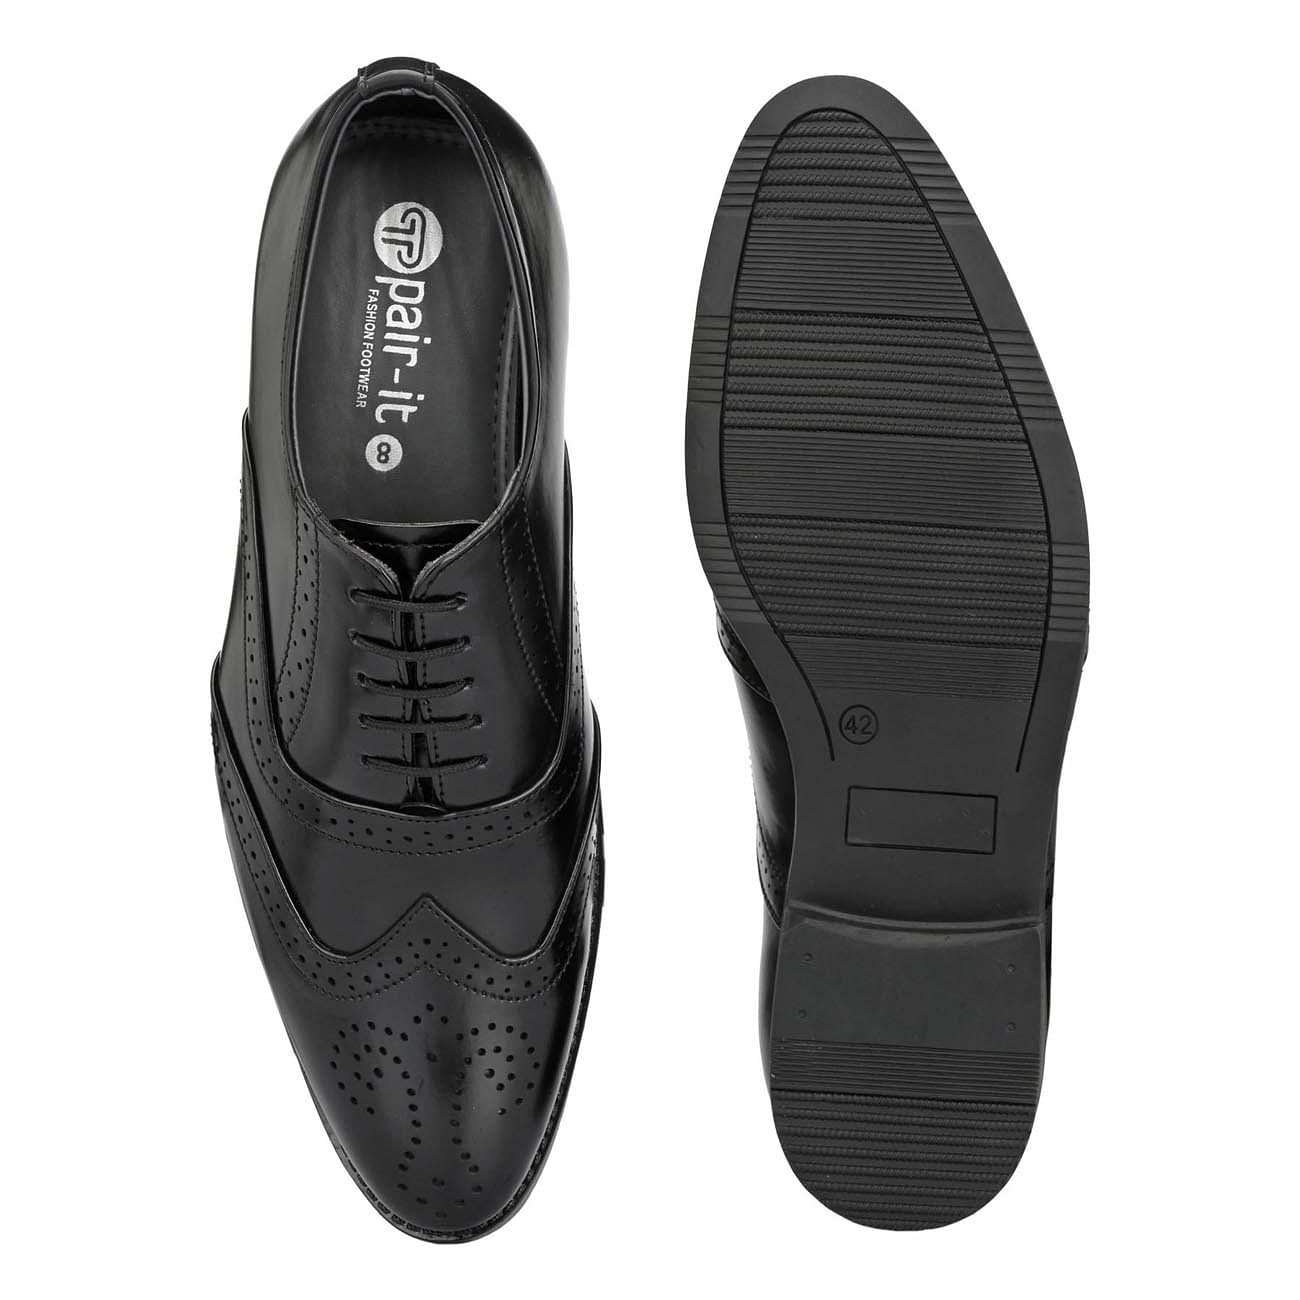 Pair-it Men's Formal Brogue Shoes - Black- LZ-T-FORMAL111